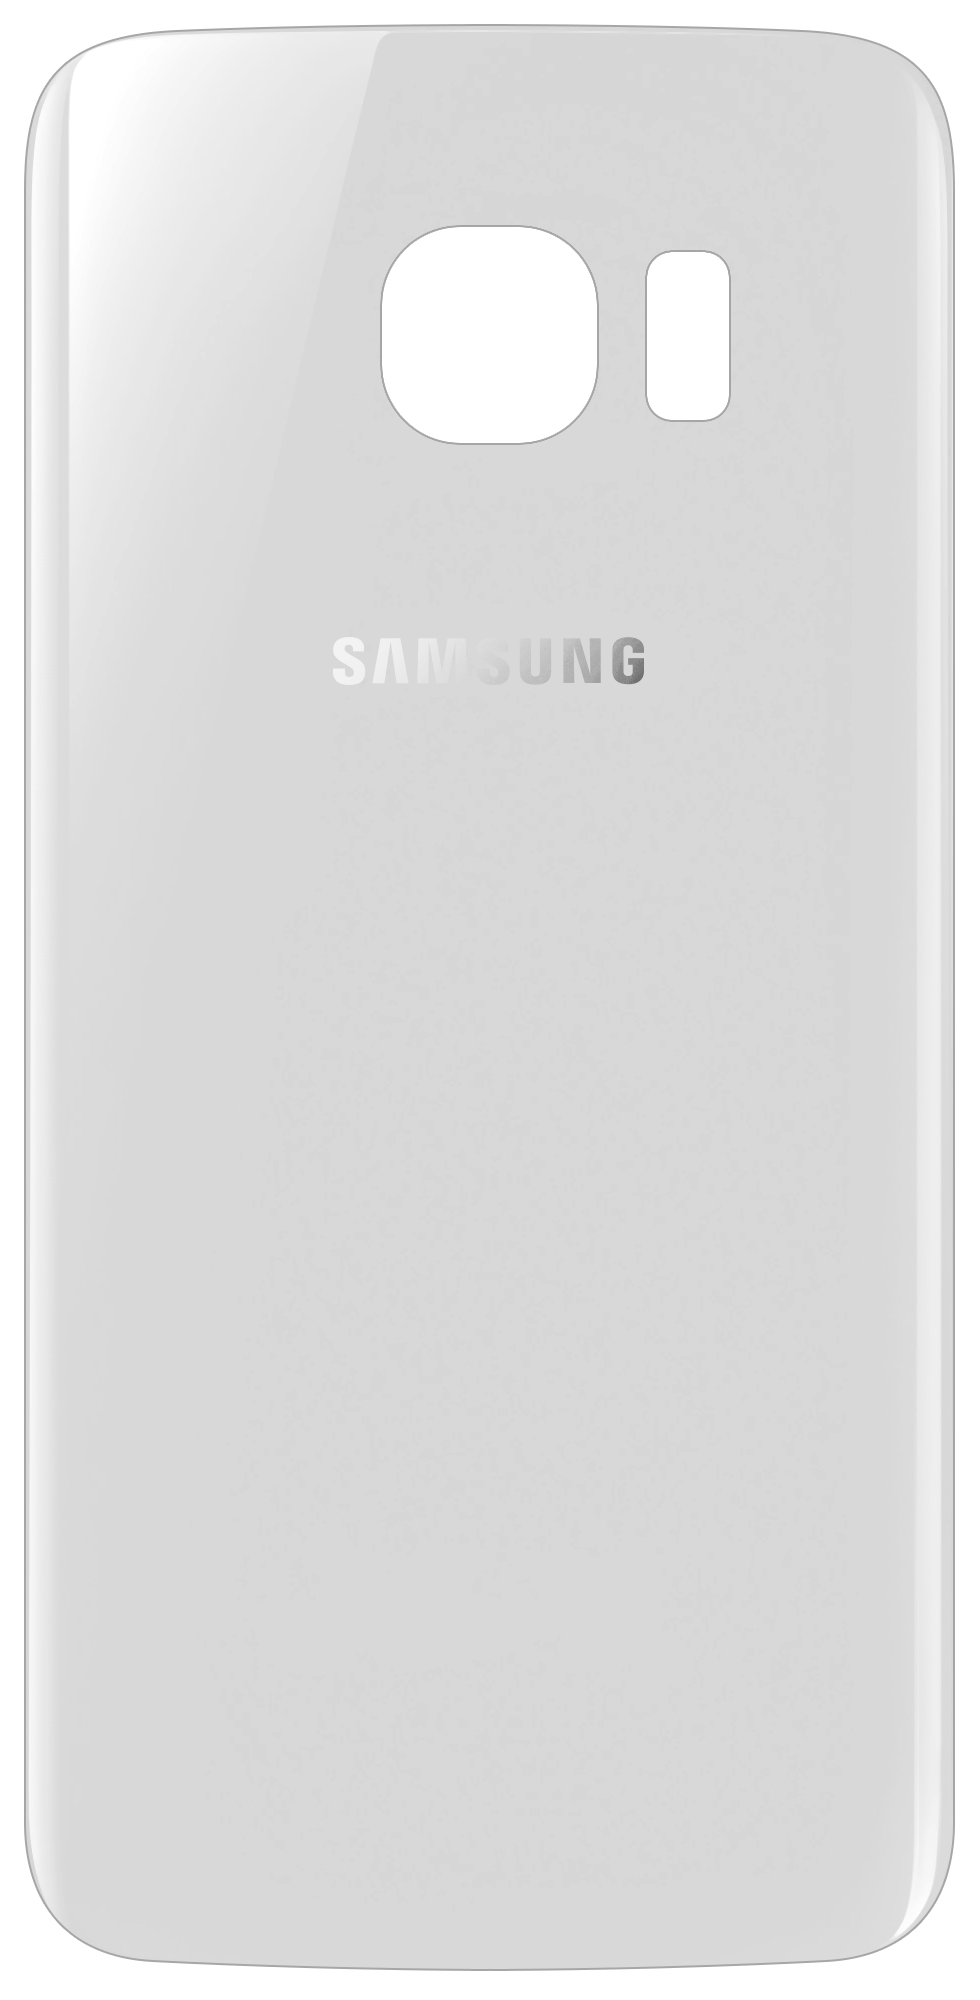 capac-baterie-samsung-galaxy-s6-edge-g925-2C-alb